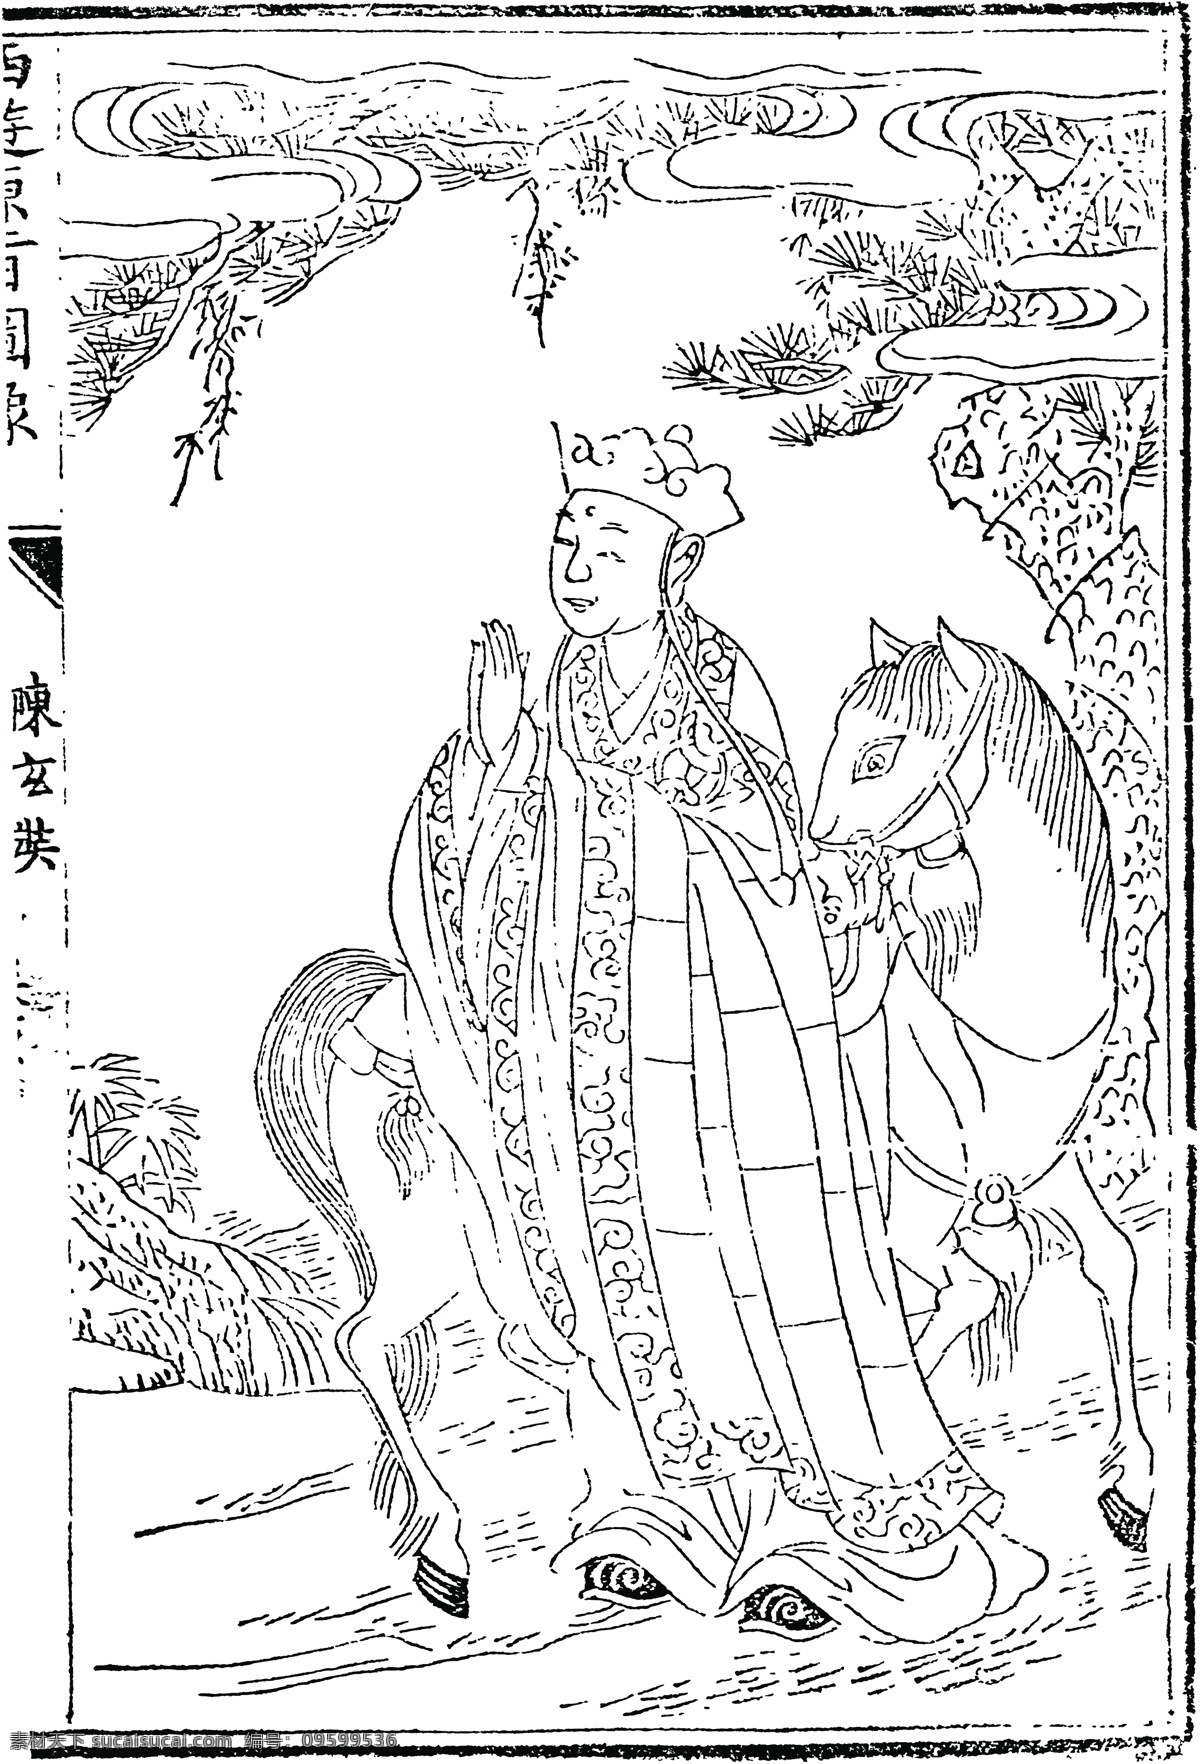 中国 古典文学 插图 木刻版画 传统文化 38 中国传统文化 设计素材 版画世界 书画美术 白色